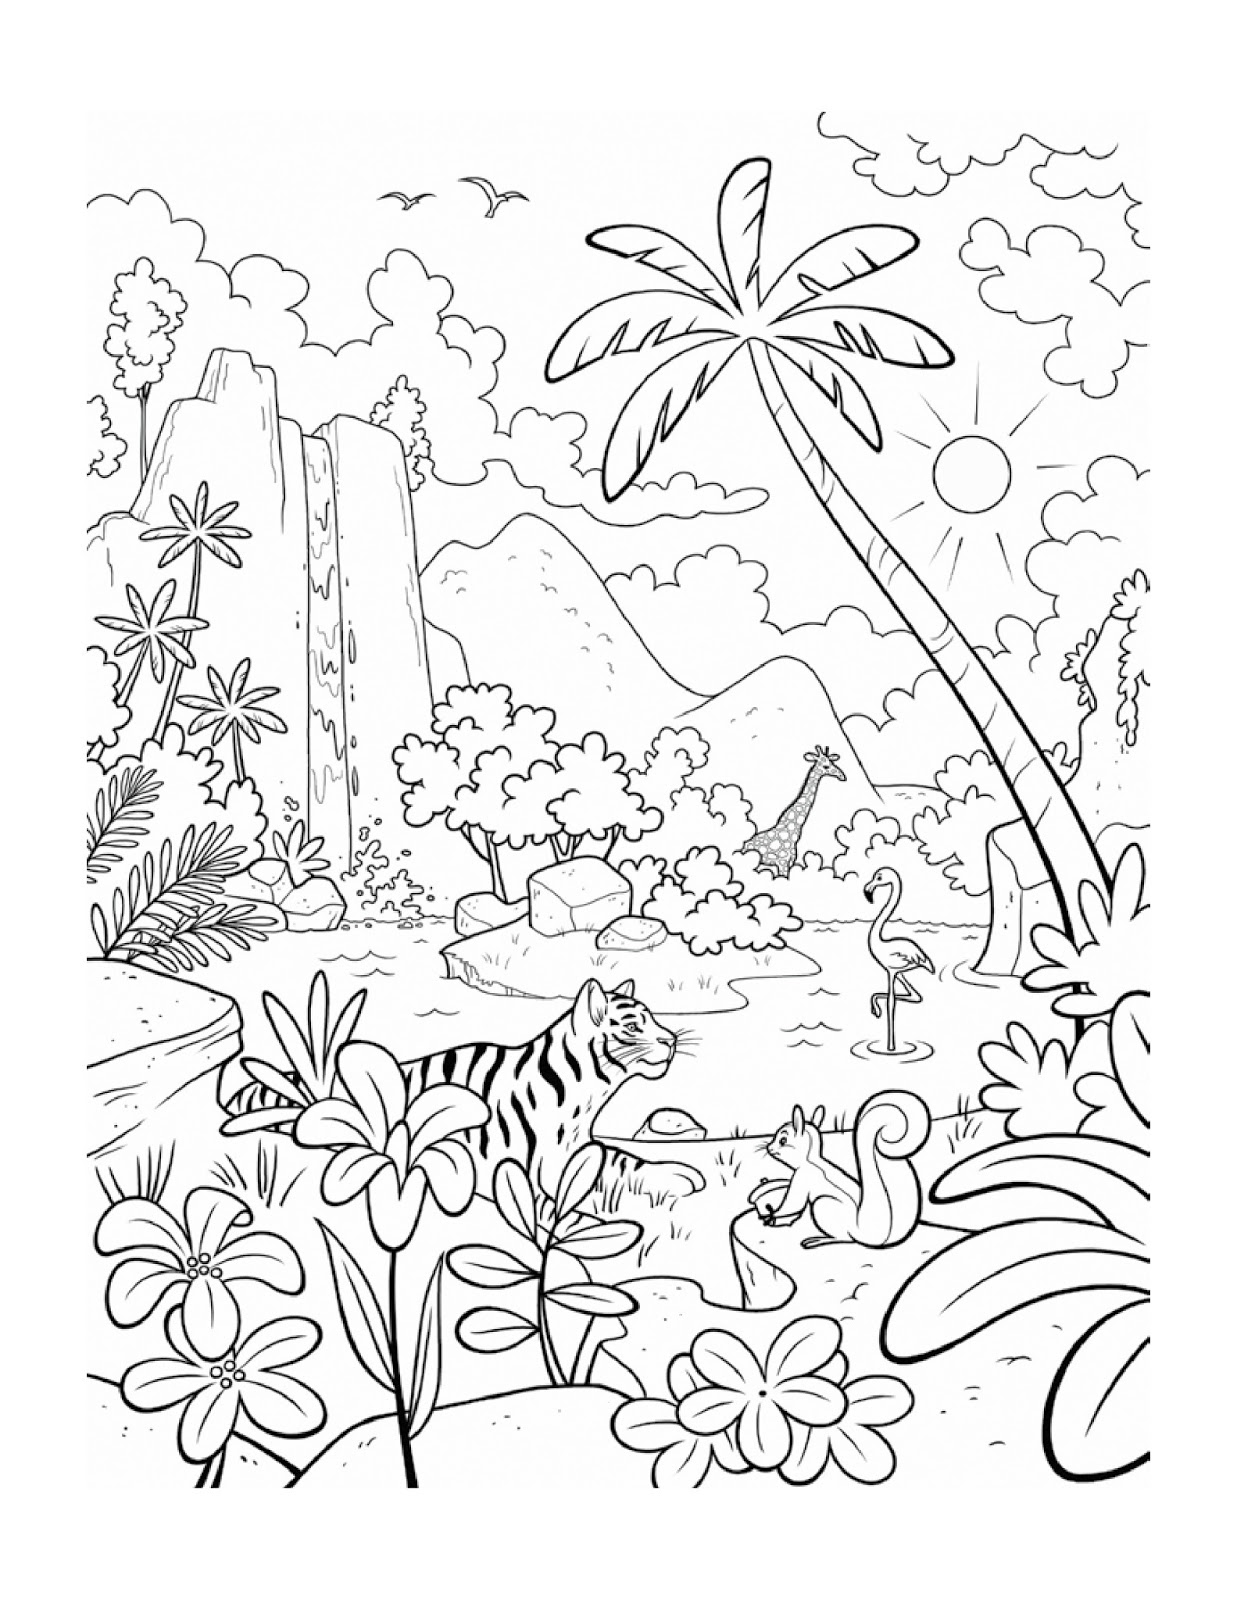 contoh gambar sketsa hewan dan tumbuhan